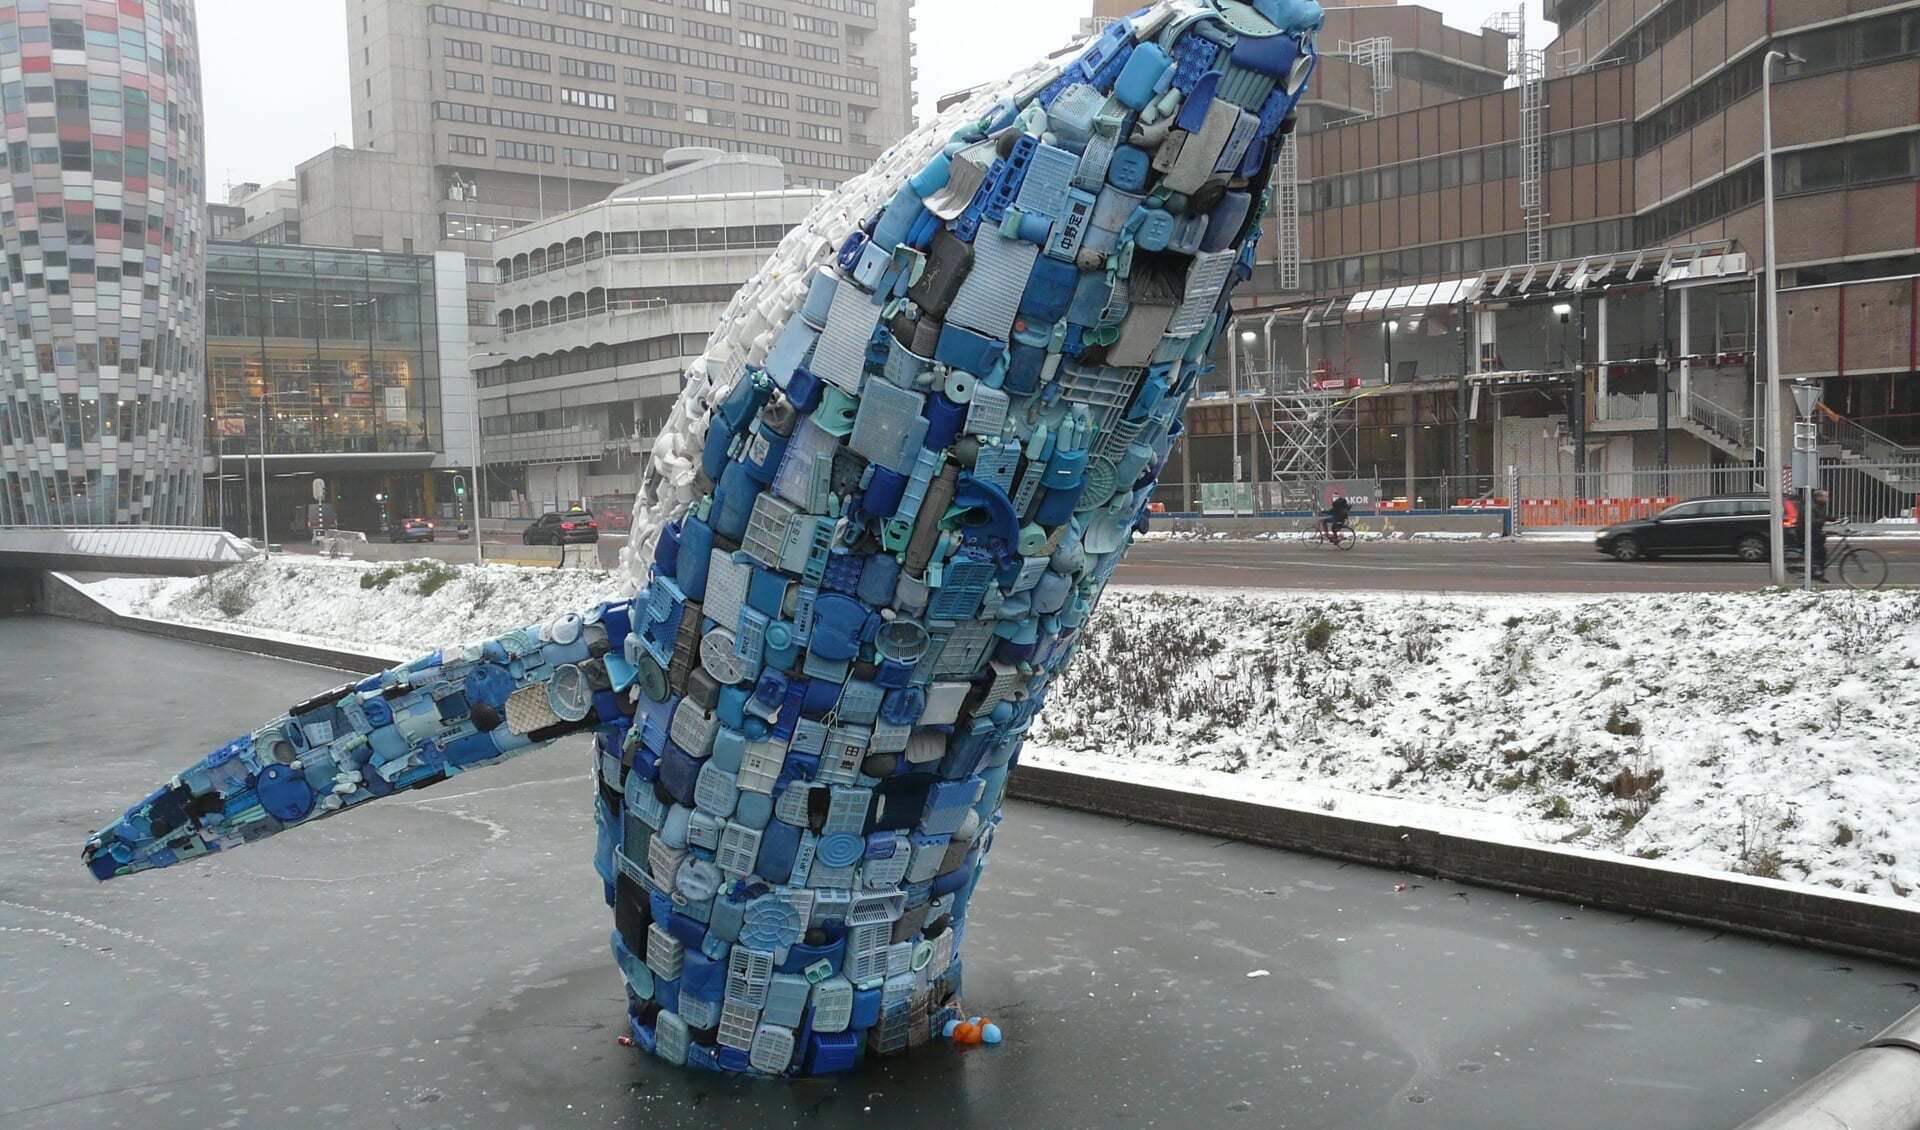 De walvis van plastic-afval in de Utrechtse gracht, als symbool om de problemen met het zwerfvuil aan te pakken.